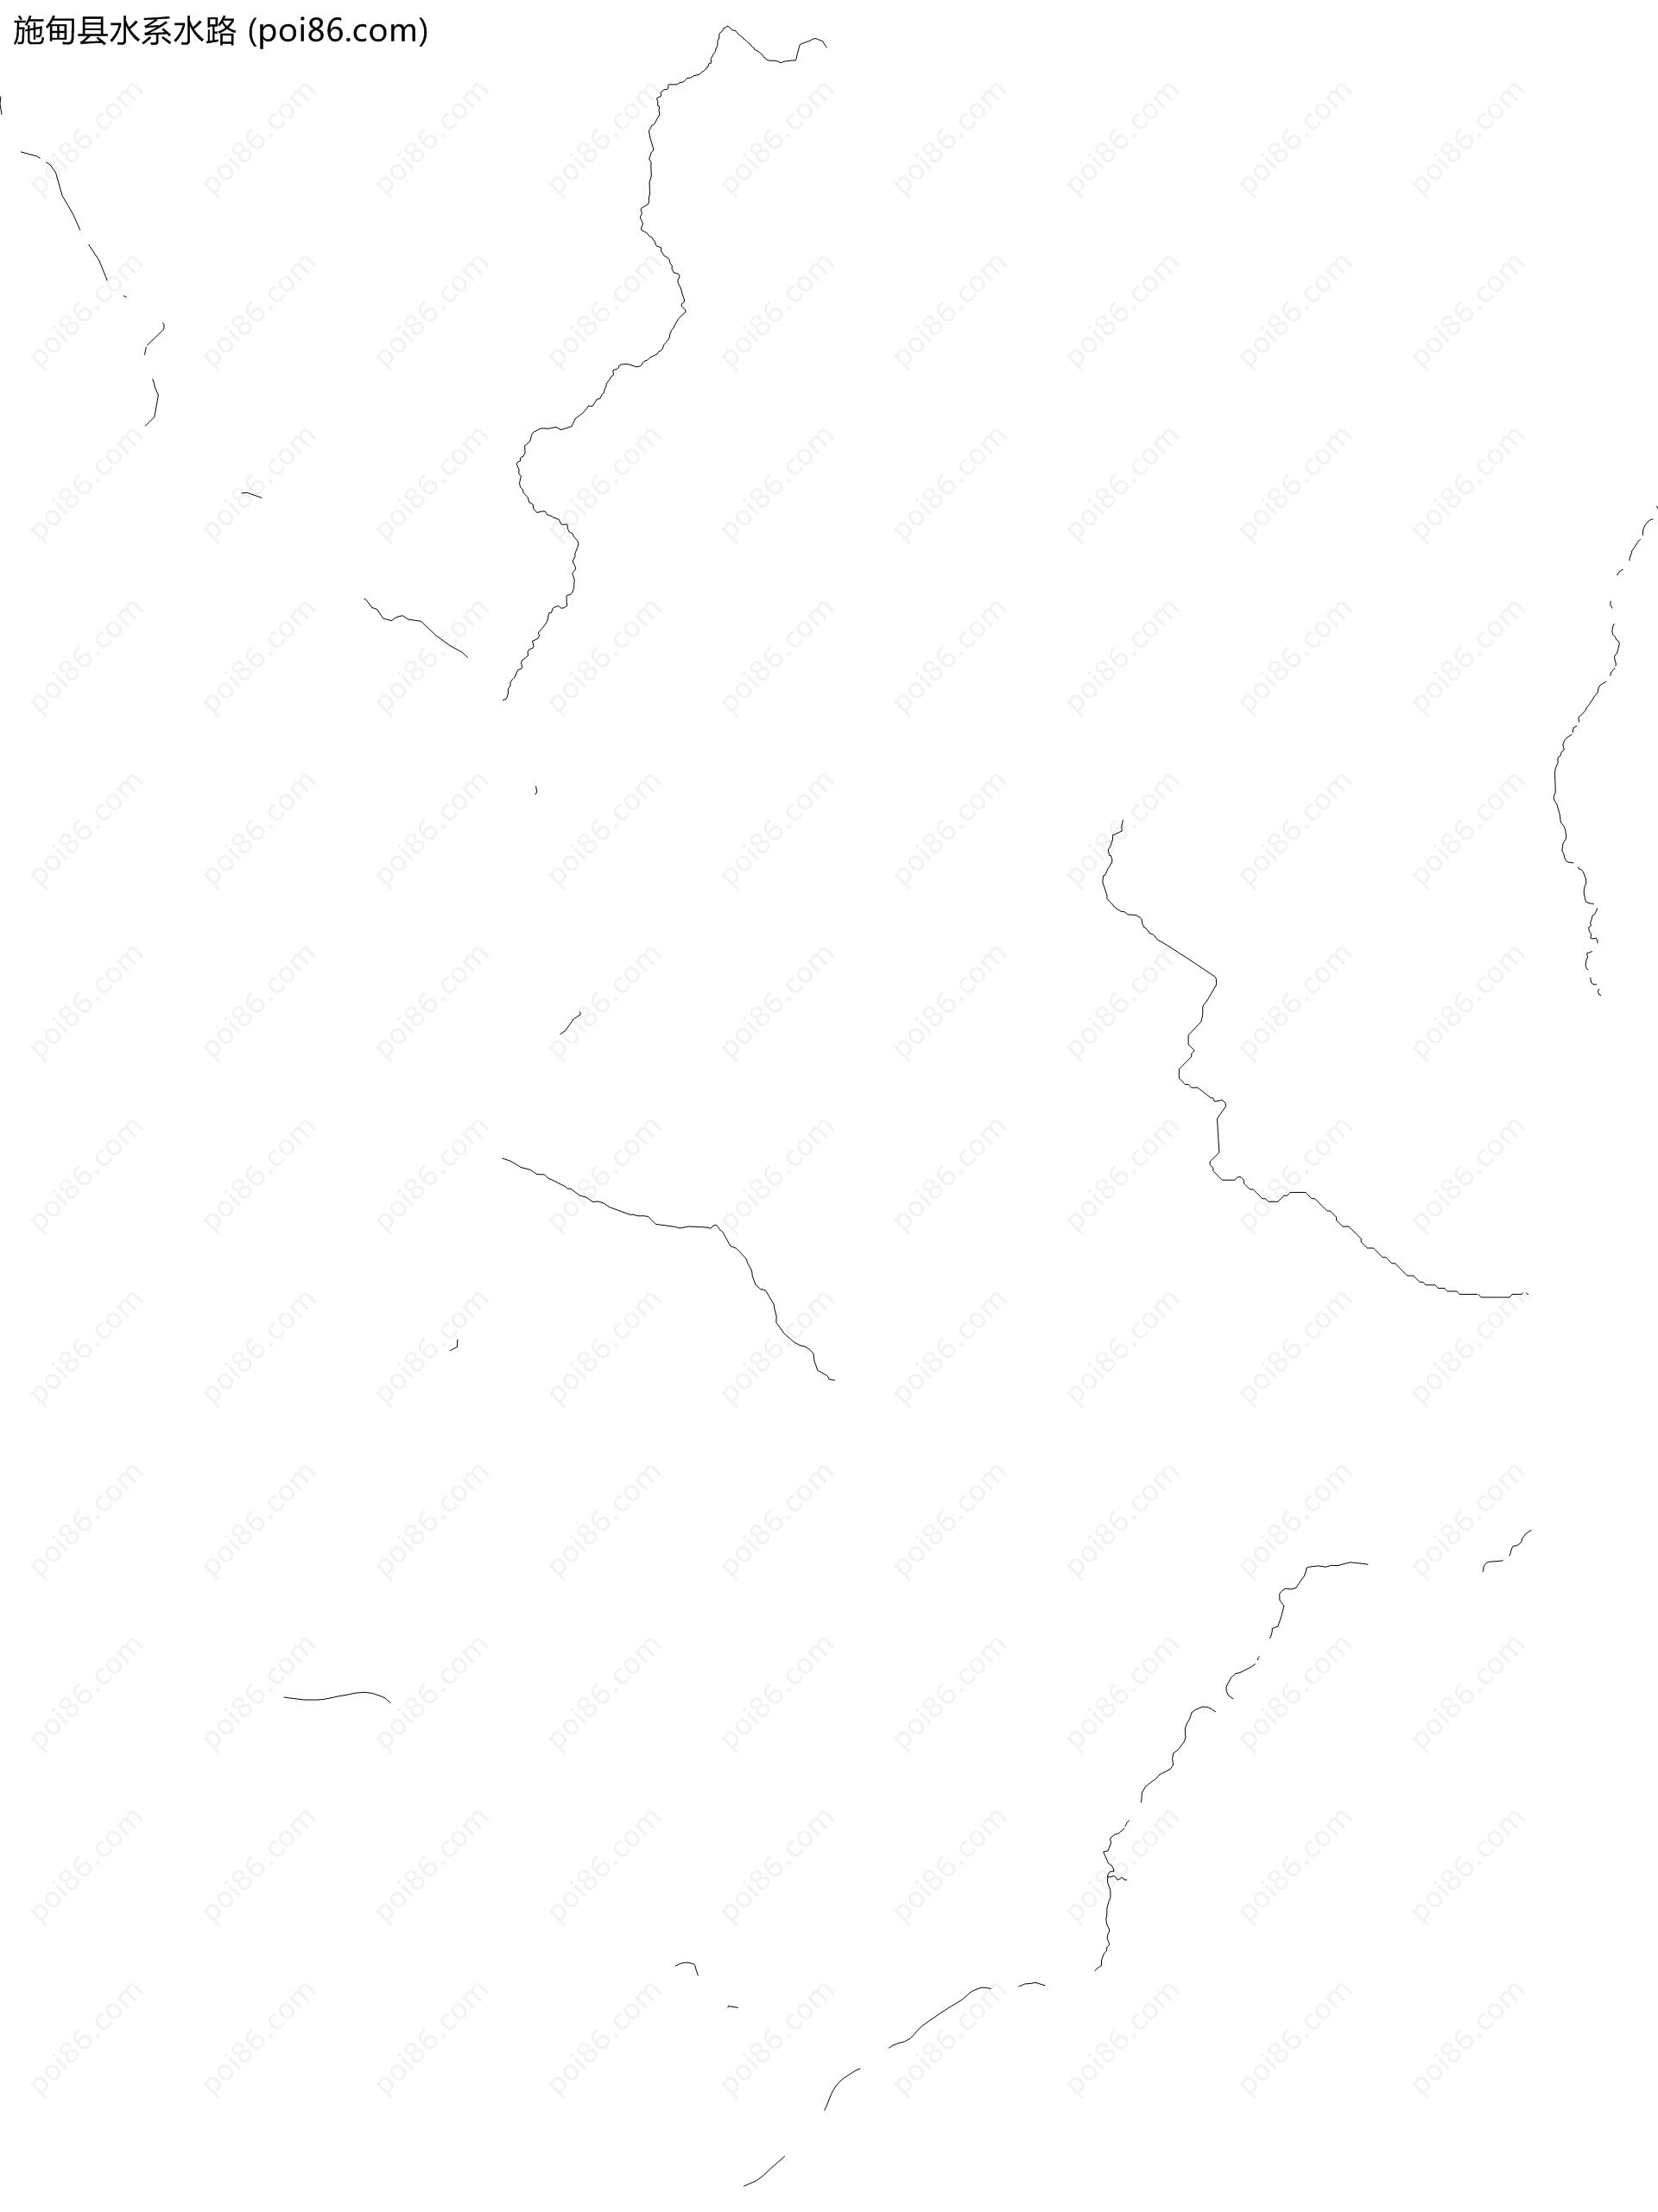 施甸县水系水路地图